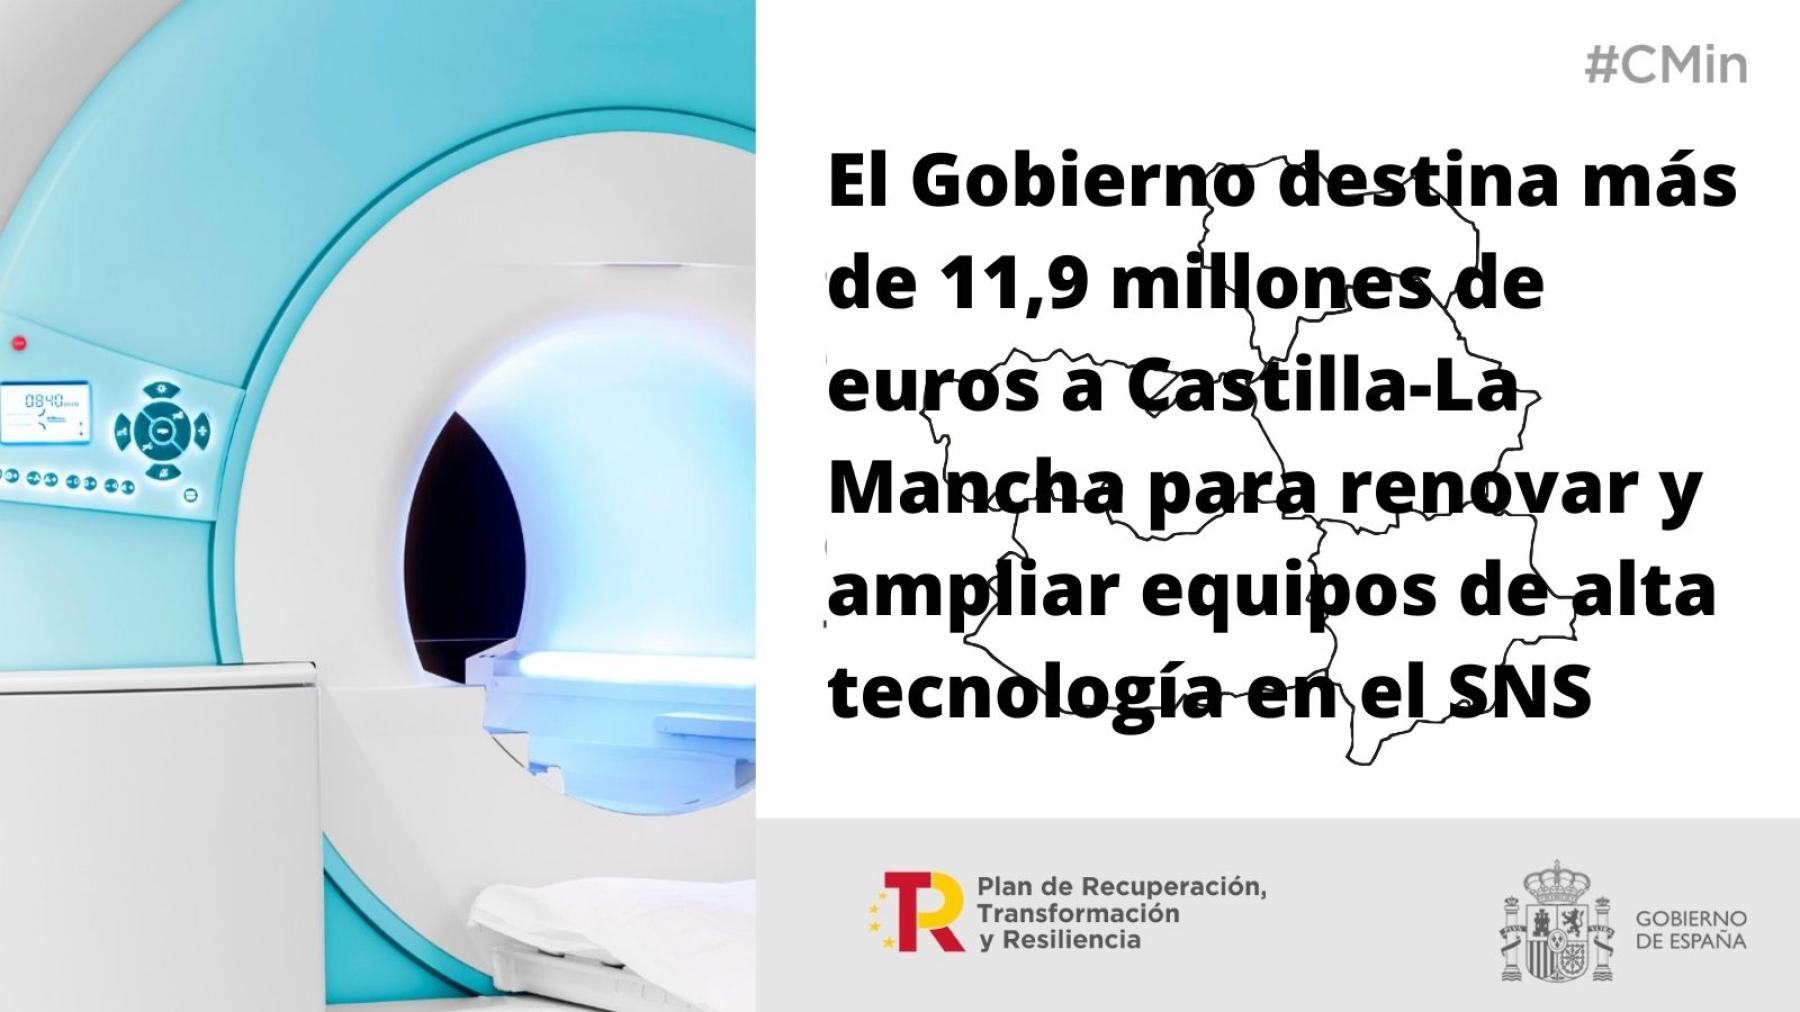 El Gobierno destina más de 11,9 millones de euros a Castilla-La Mancha para renovar y ampliar equipos de alta tecnología en el SNS